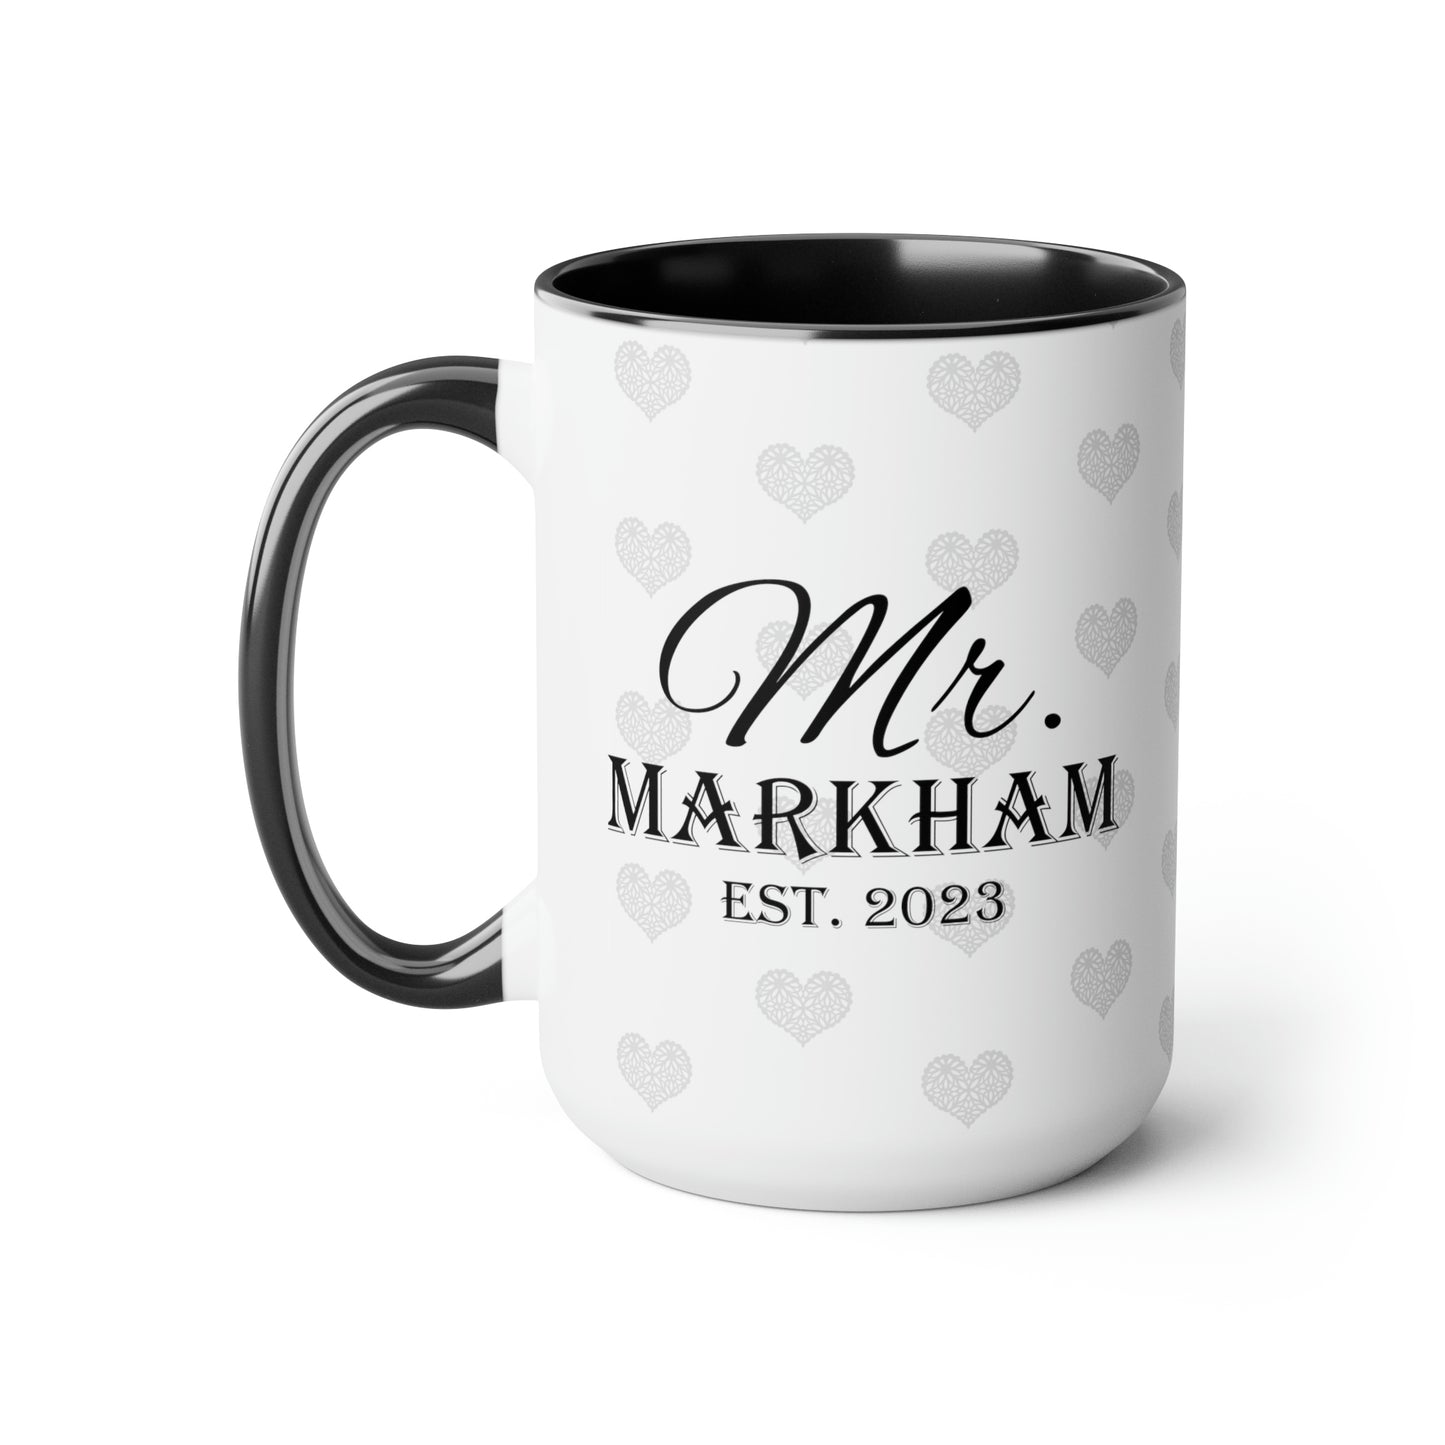 Mr Markham Two-Tone Coffee Mugs, 15oz